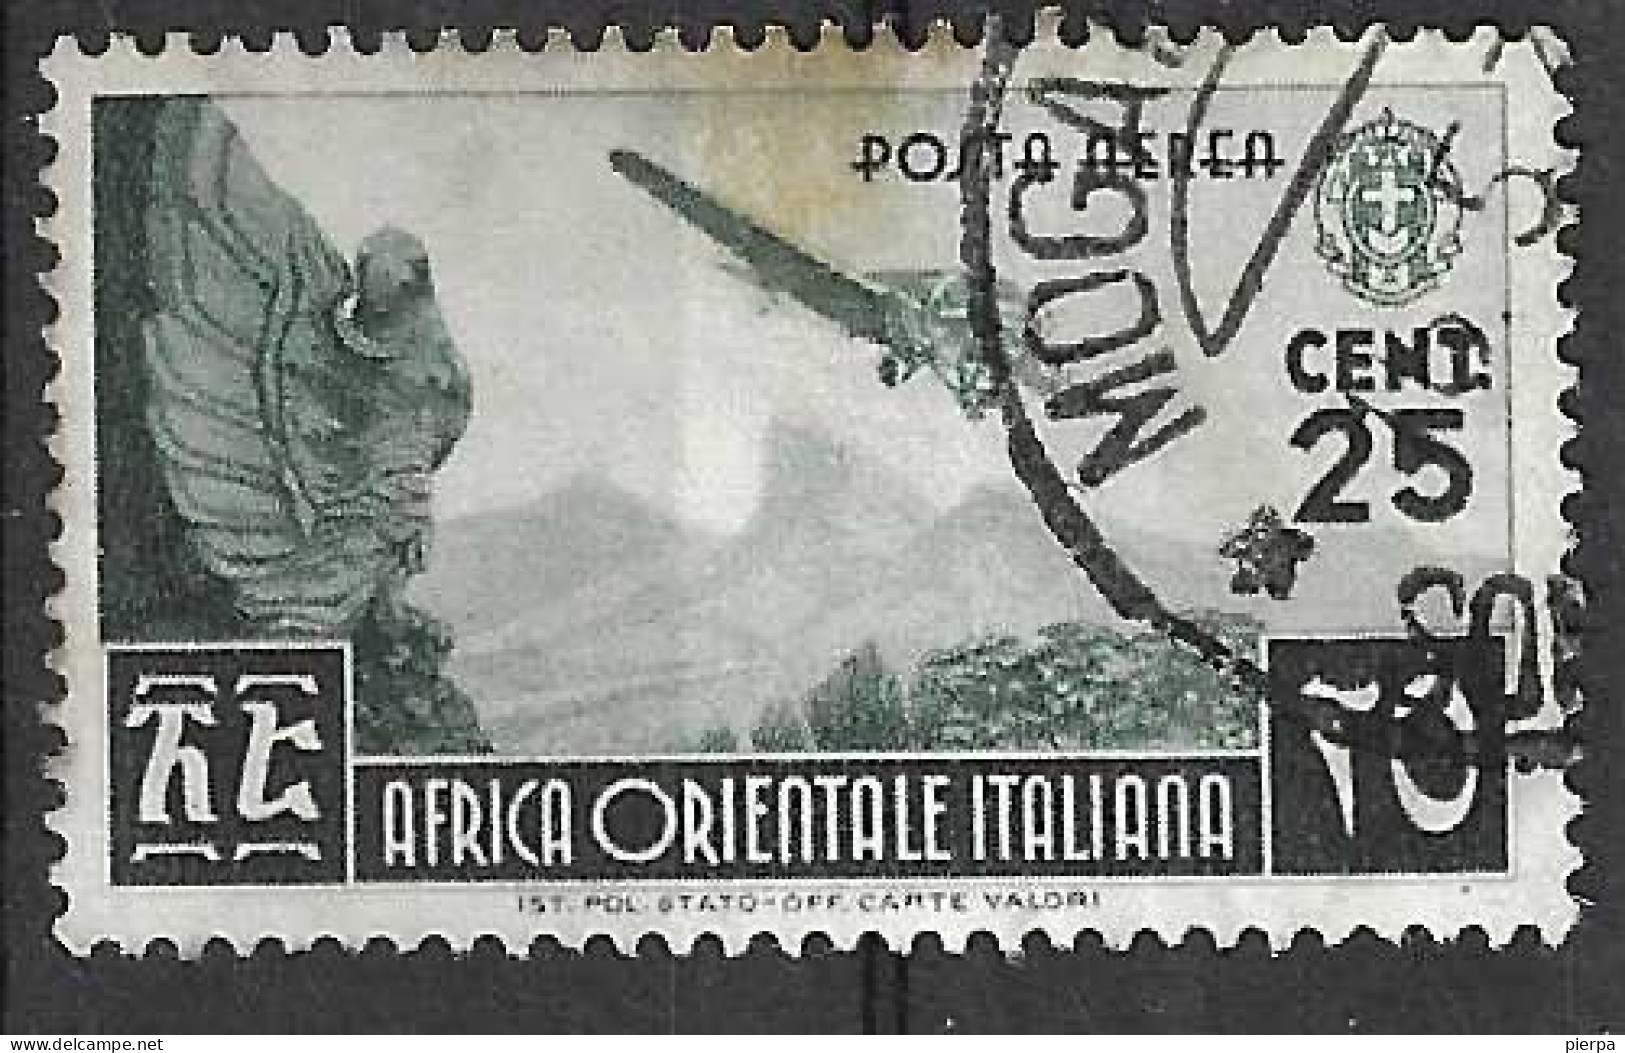 AFRICA ORIENTALE ITALIANA - 1938 - POSTA AEREA  -CENT. 25 - USATO (YVERT AV1- MICHEL 21 - SS A1) - Italian Eastern Africa